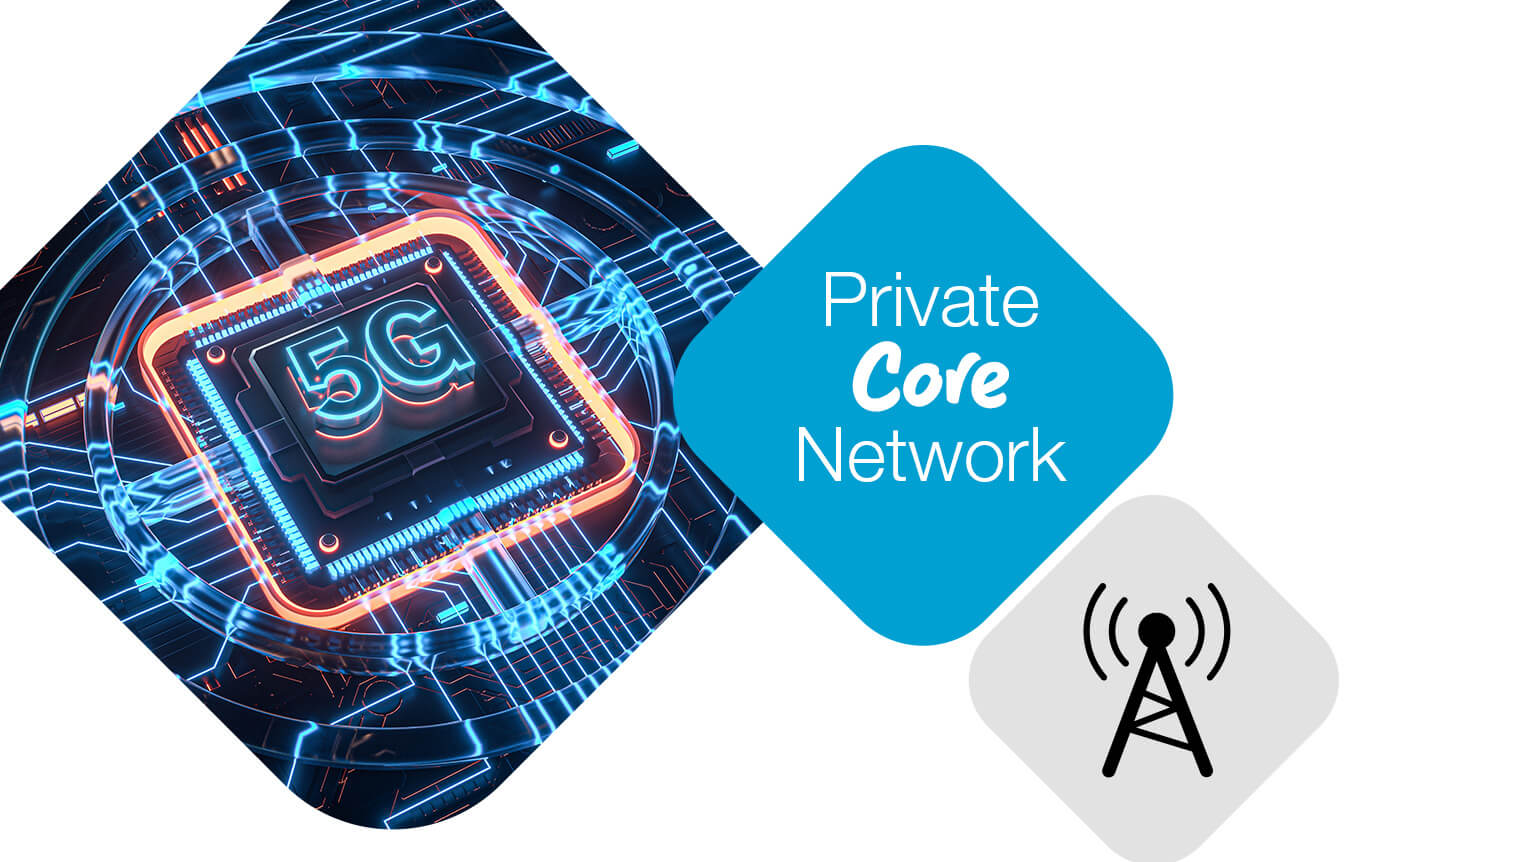 Private Core Network